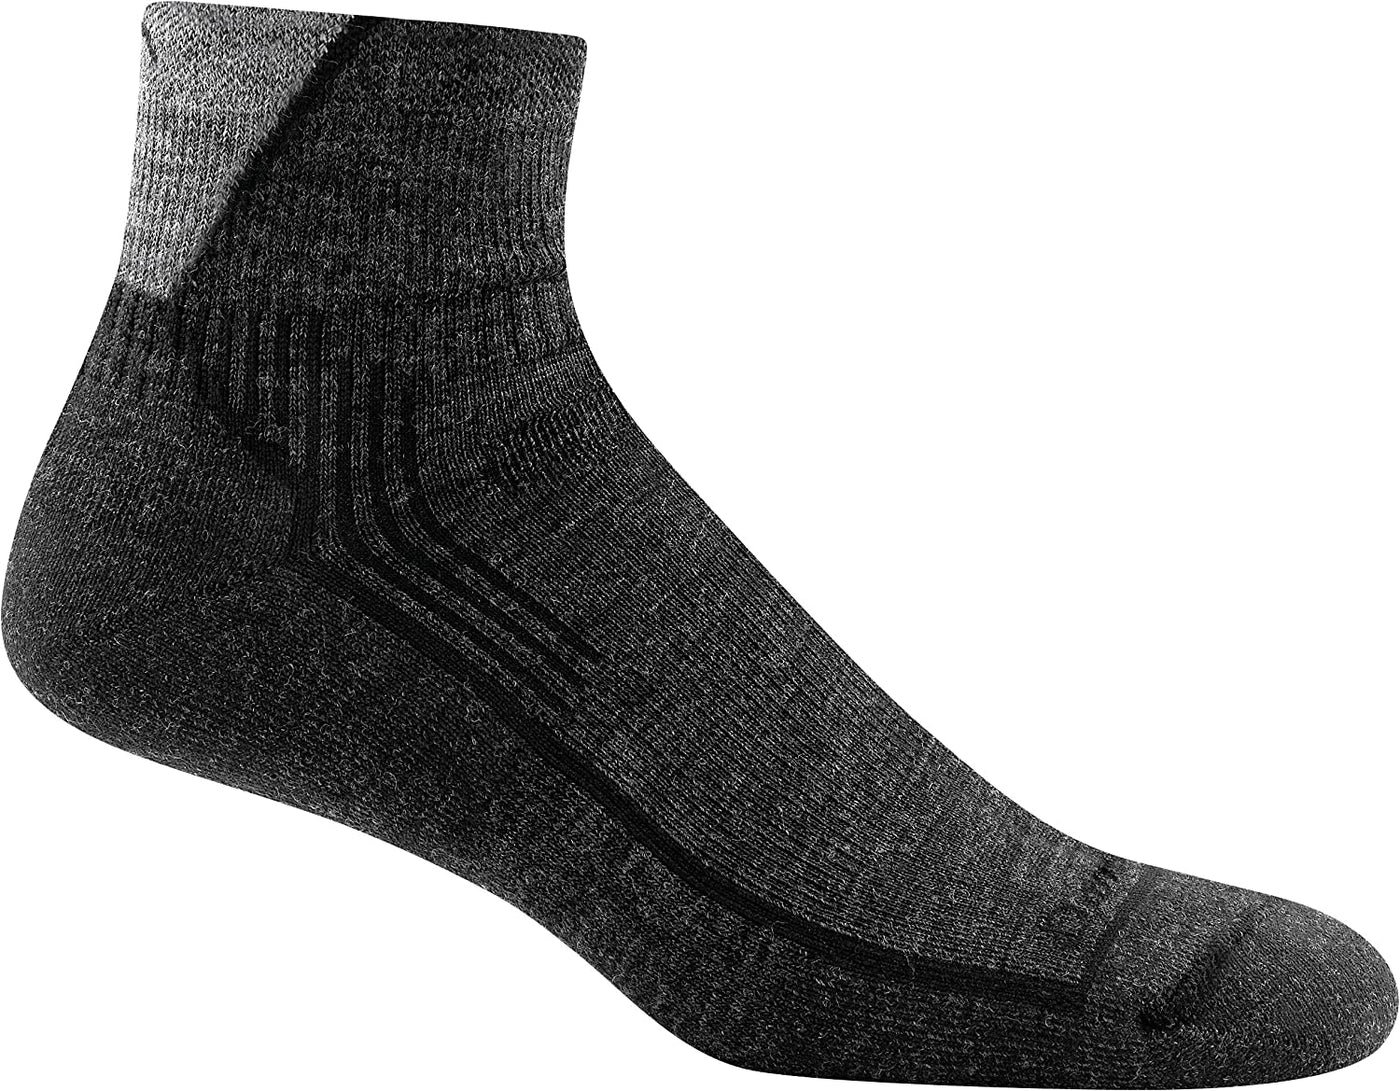 Darn Tough Hike/Trek 1/4 Sock 1905 BLK